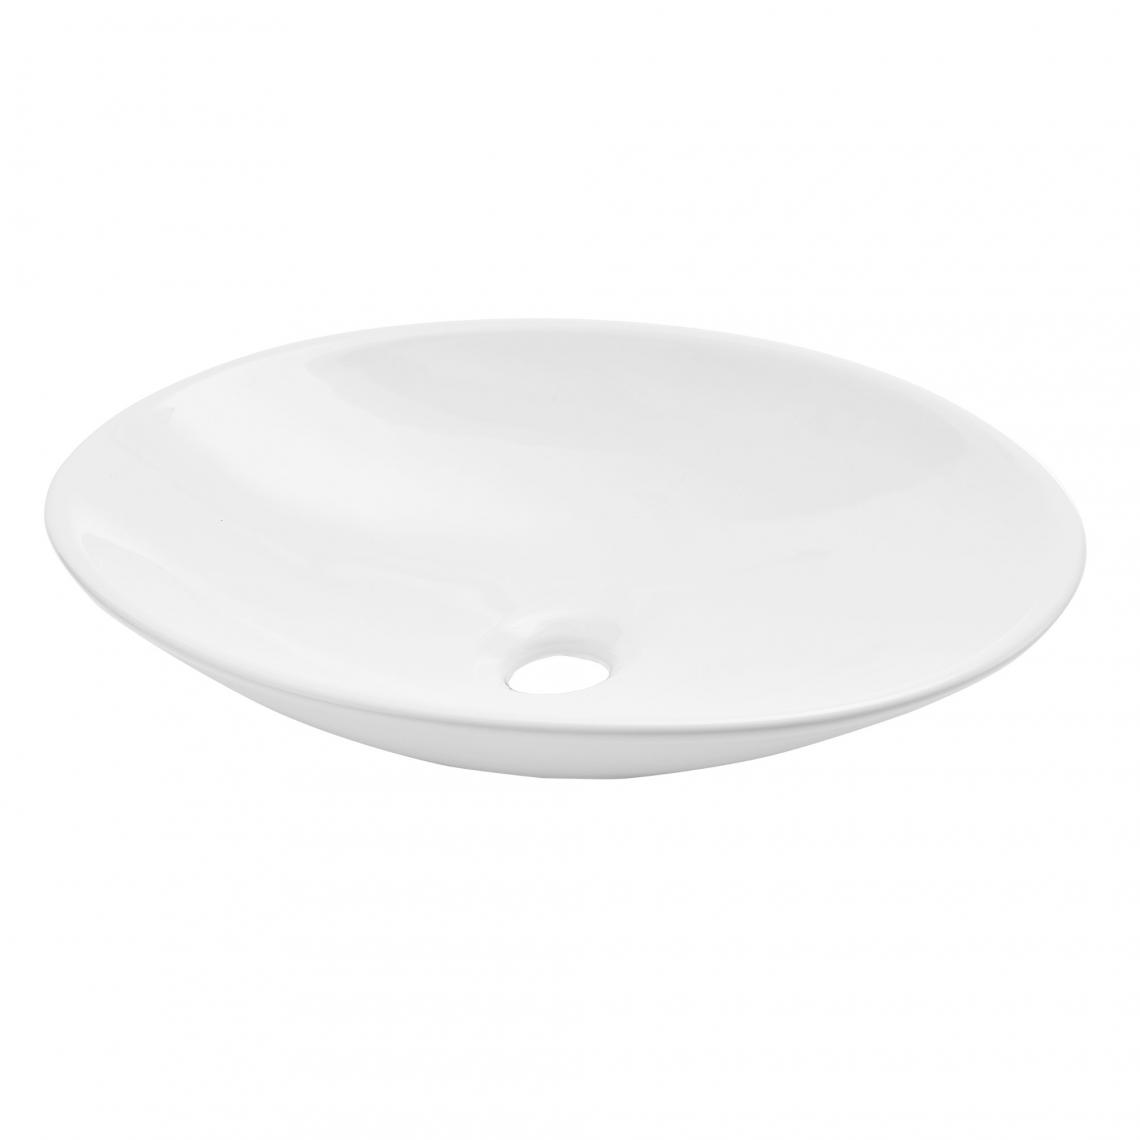 Helloshop26 - Lavabo céramique 50 x 35,5cm rond pour l'installation debout WC blanc 03_0002539 - Vasque